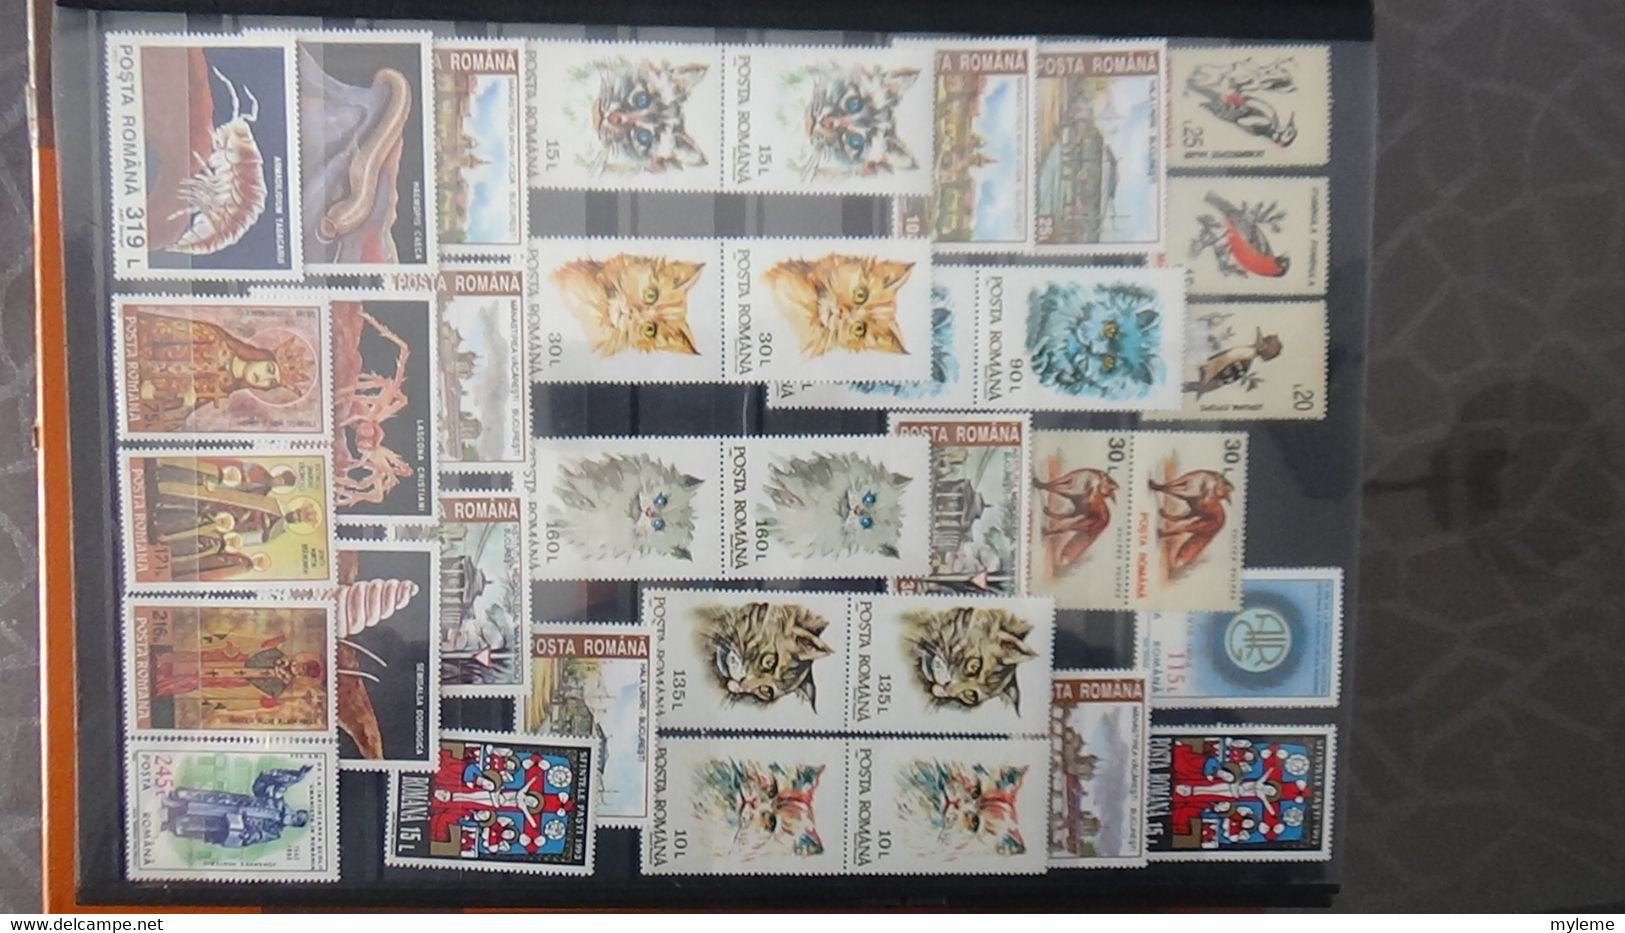 S90 Collection de Roumanie en timbres **.  A saisir !!!